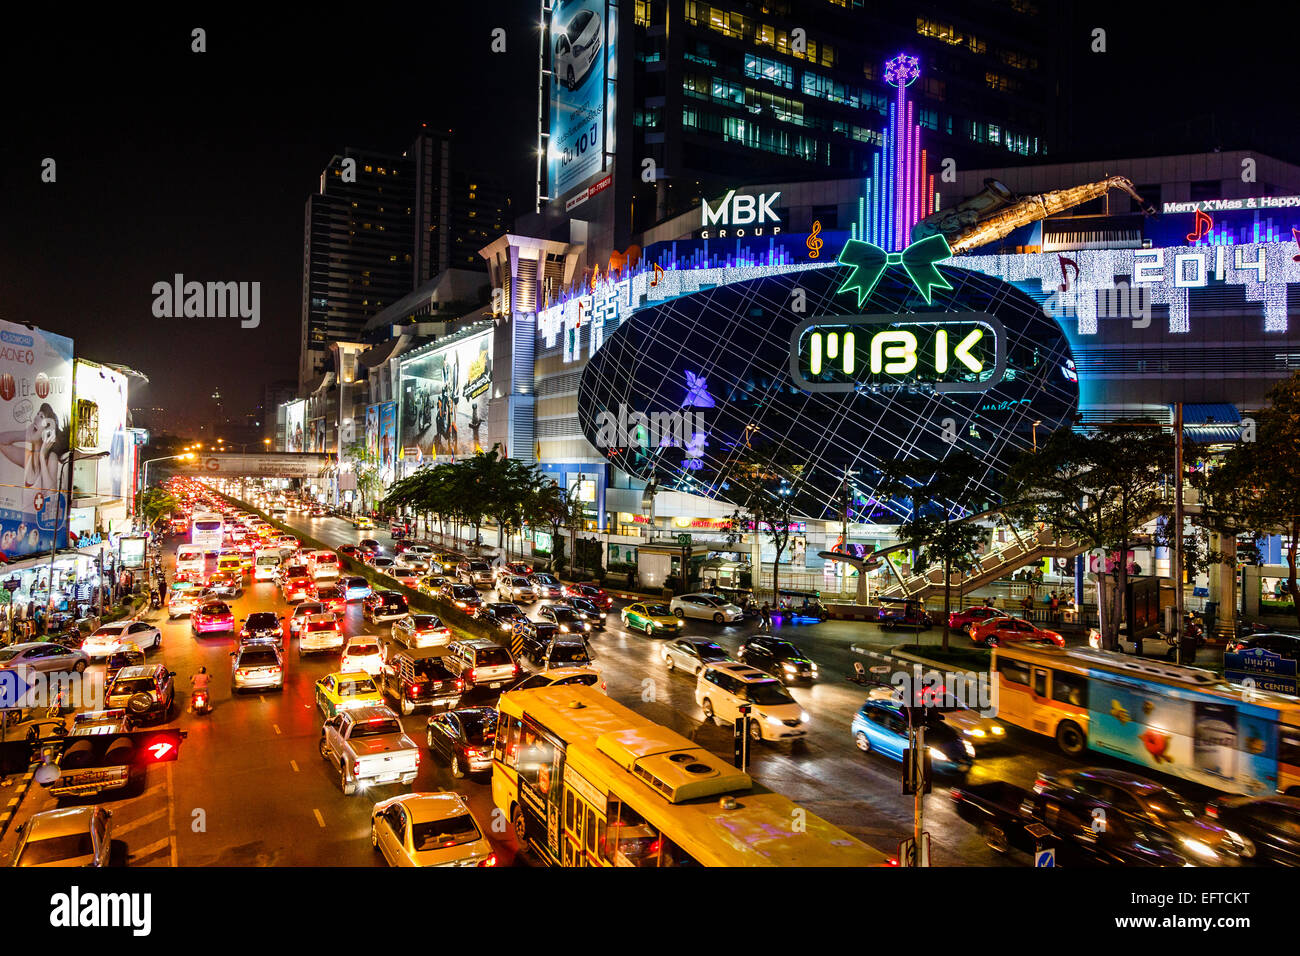 Bkk forex city plaza